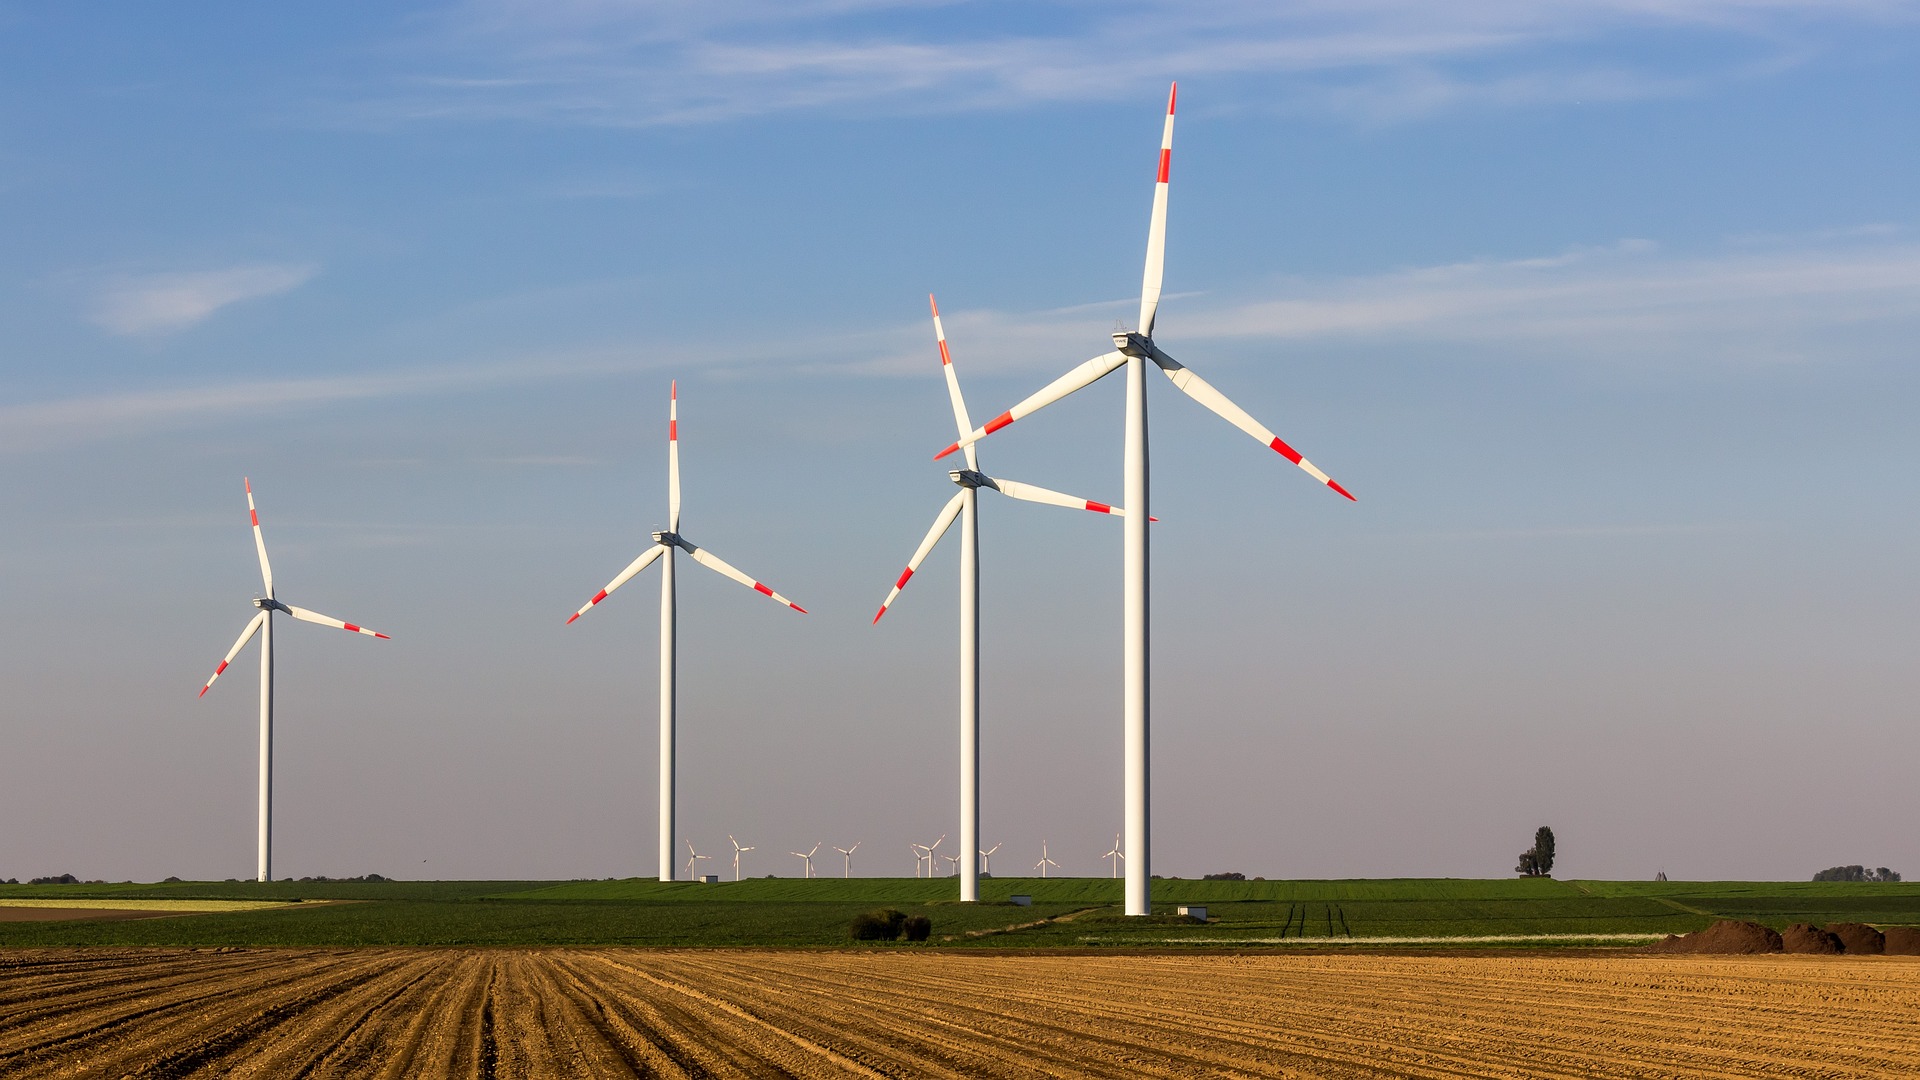 Hinter einem Stoppelfeld sieht man eine Windkraftanlage aus vier Windrädern und mehreren Windrädern in weiterer Entfernung.